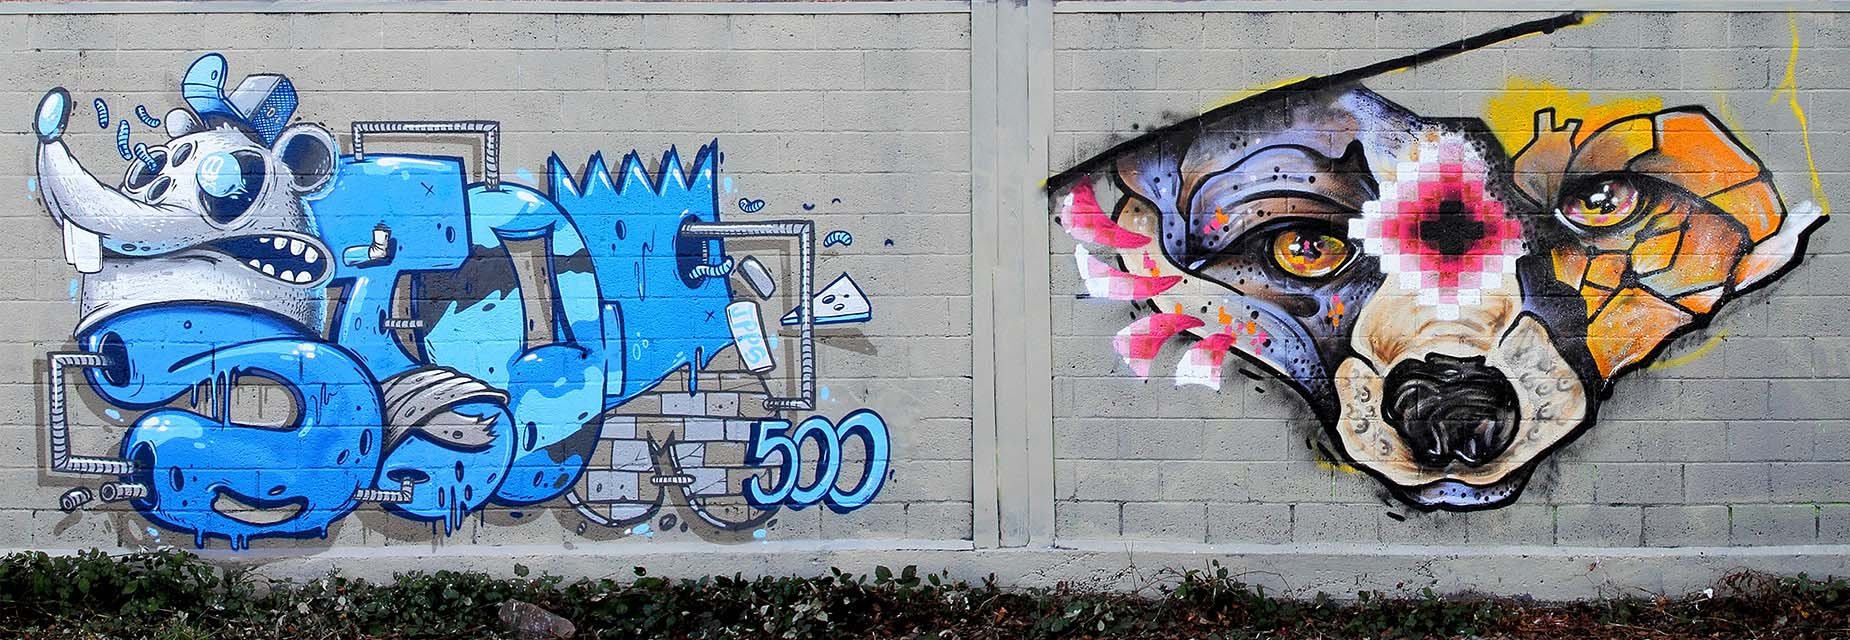 граффити свинья стим фото 75